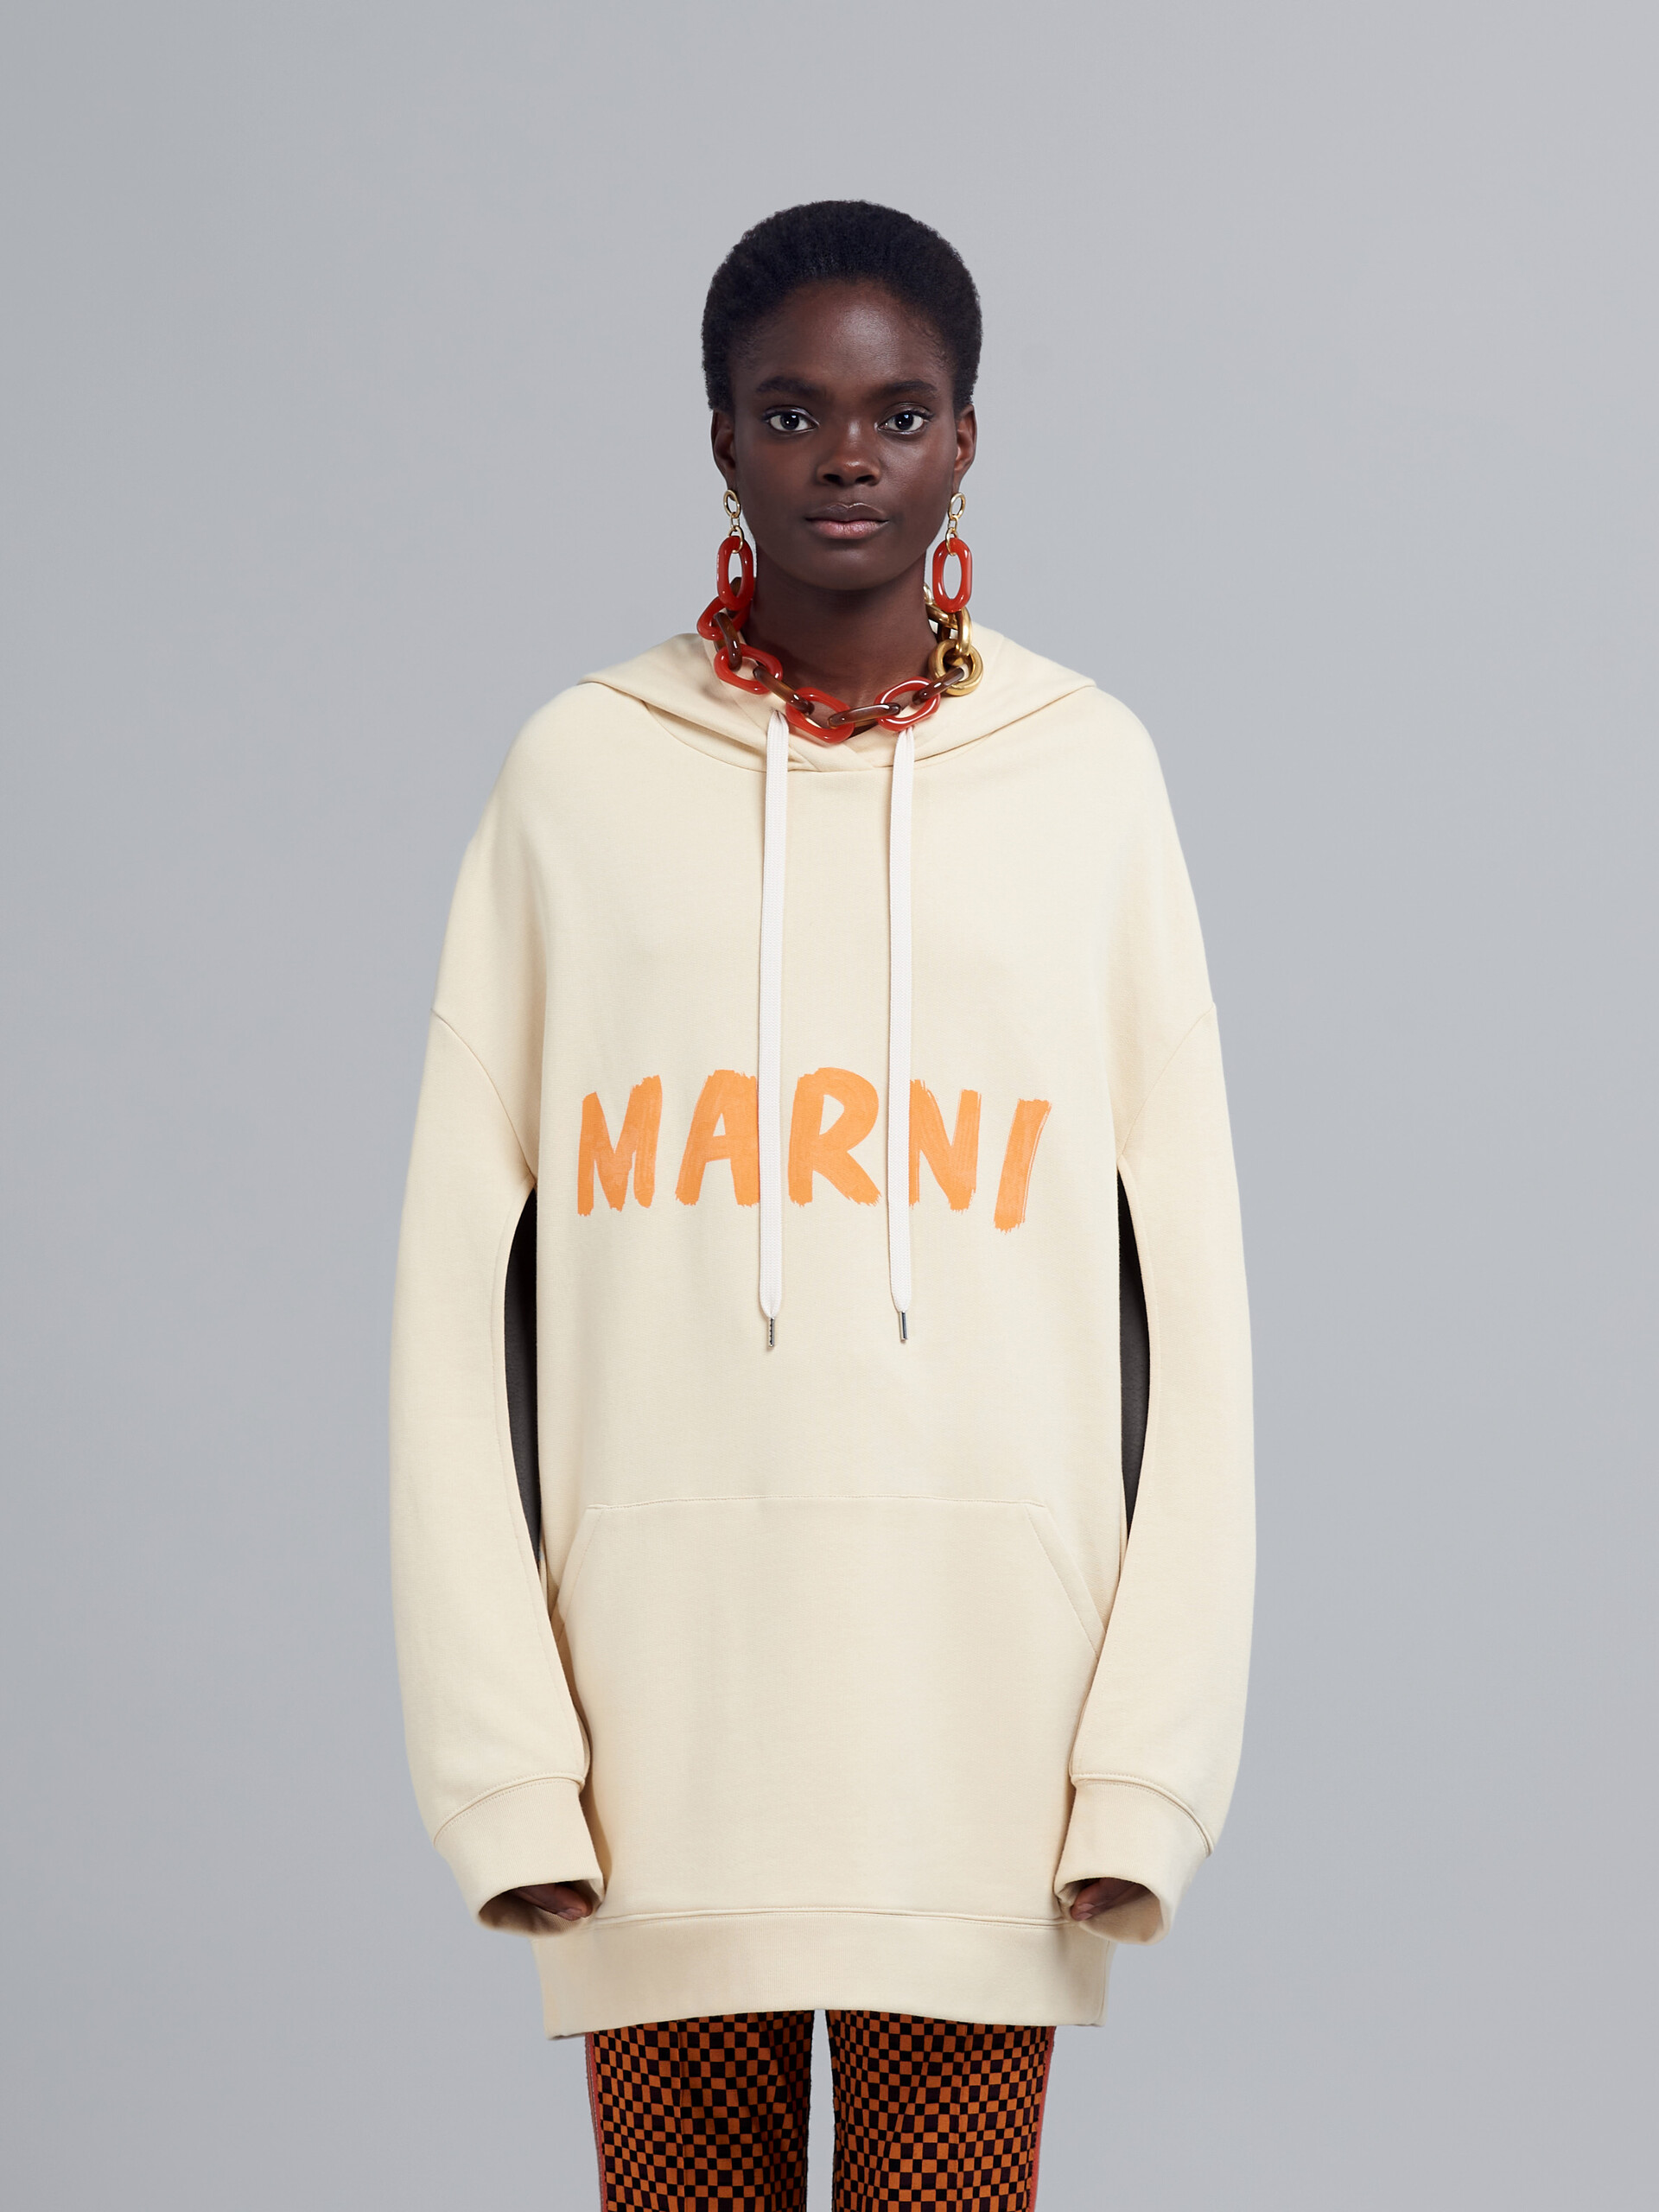 Marniのレタリング入りオーガニックコットン製スウェットシャツ - プルオーバー - Image 2